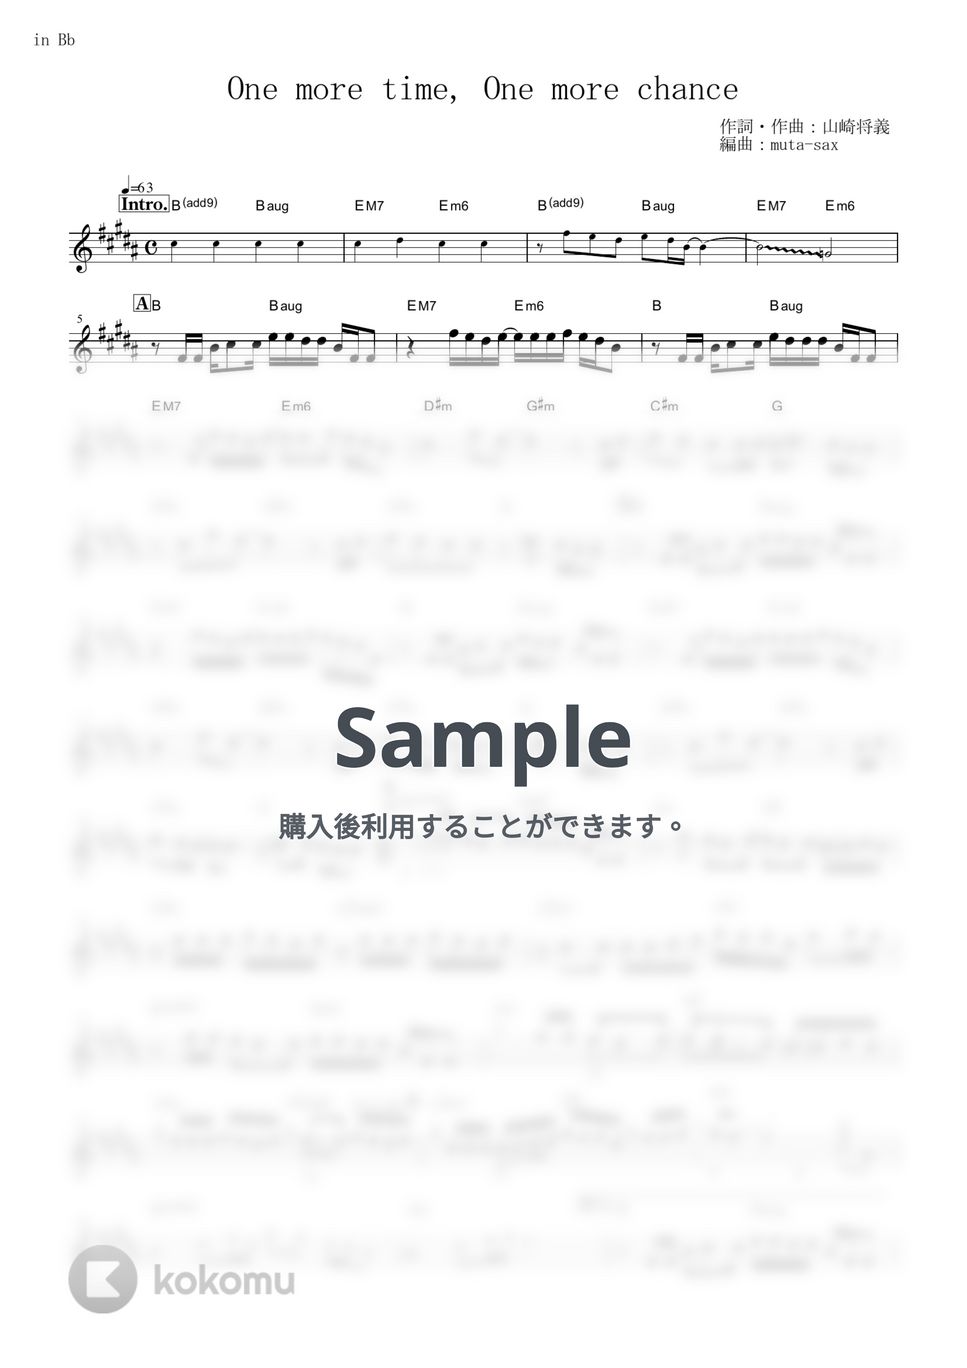 山崎まさよし - One more time, One more chance (『秒速5センチメートル』 / in Bb) by muta-sax